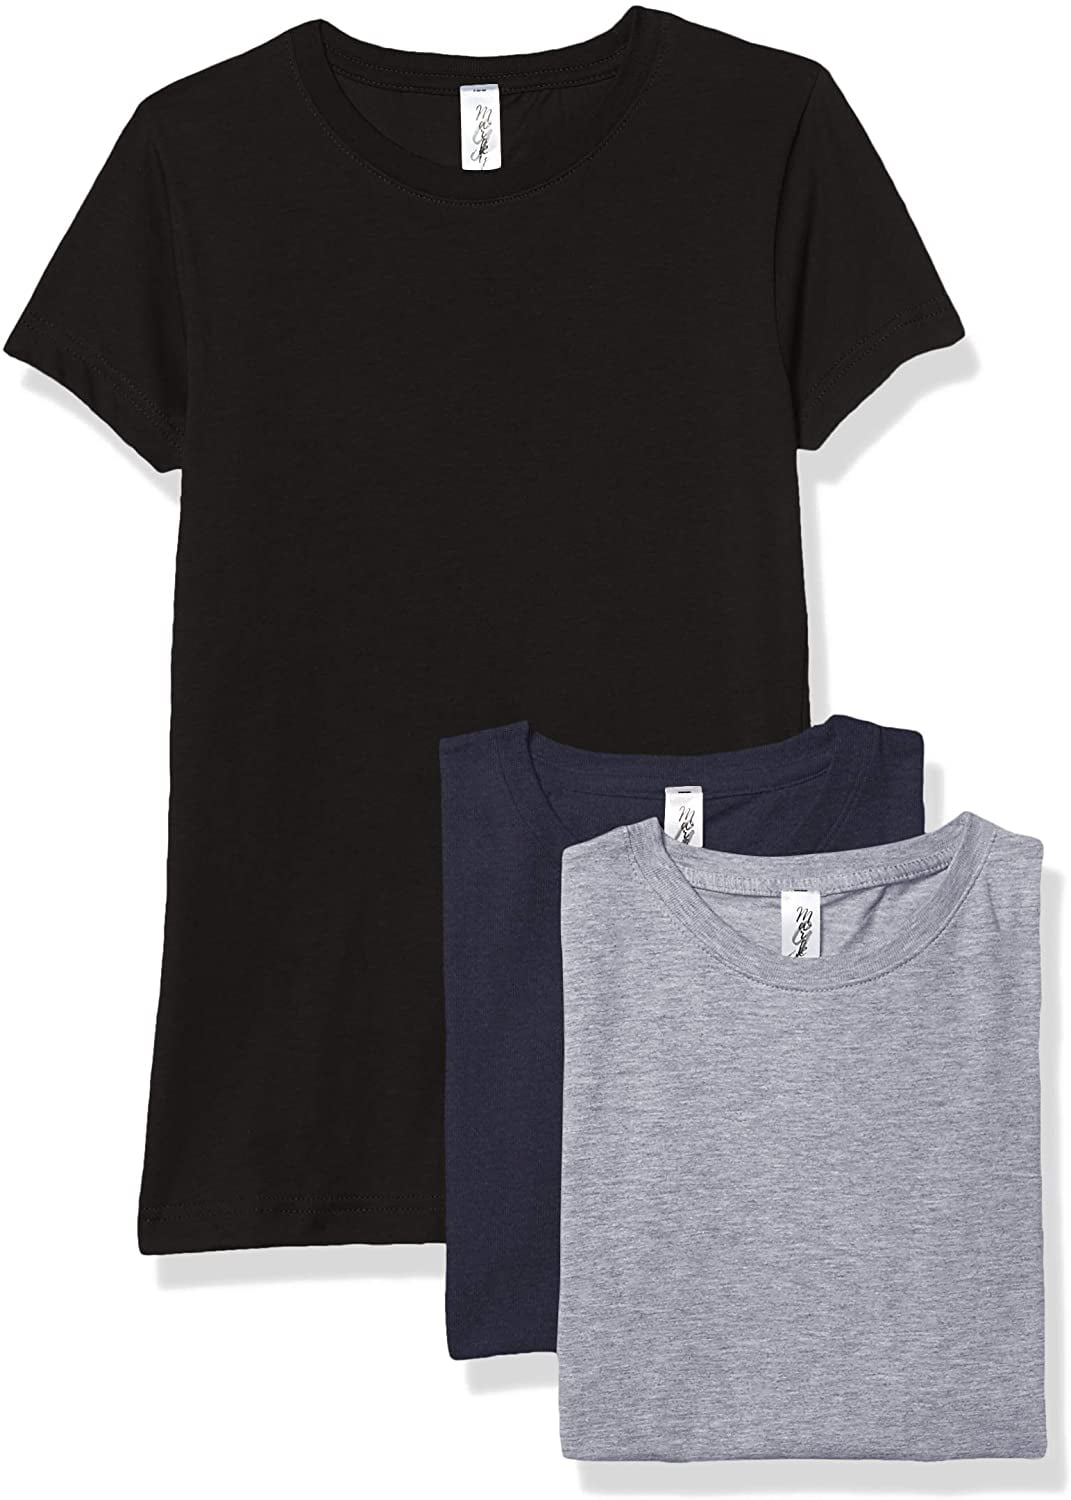 Marky G Apparel Mens Fine Jersey Short Sleeve T-Shirt 3 Pack 